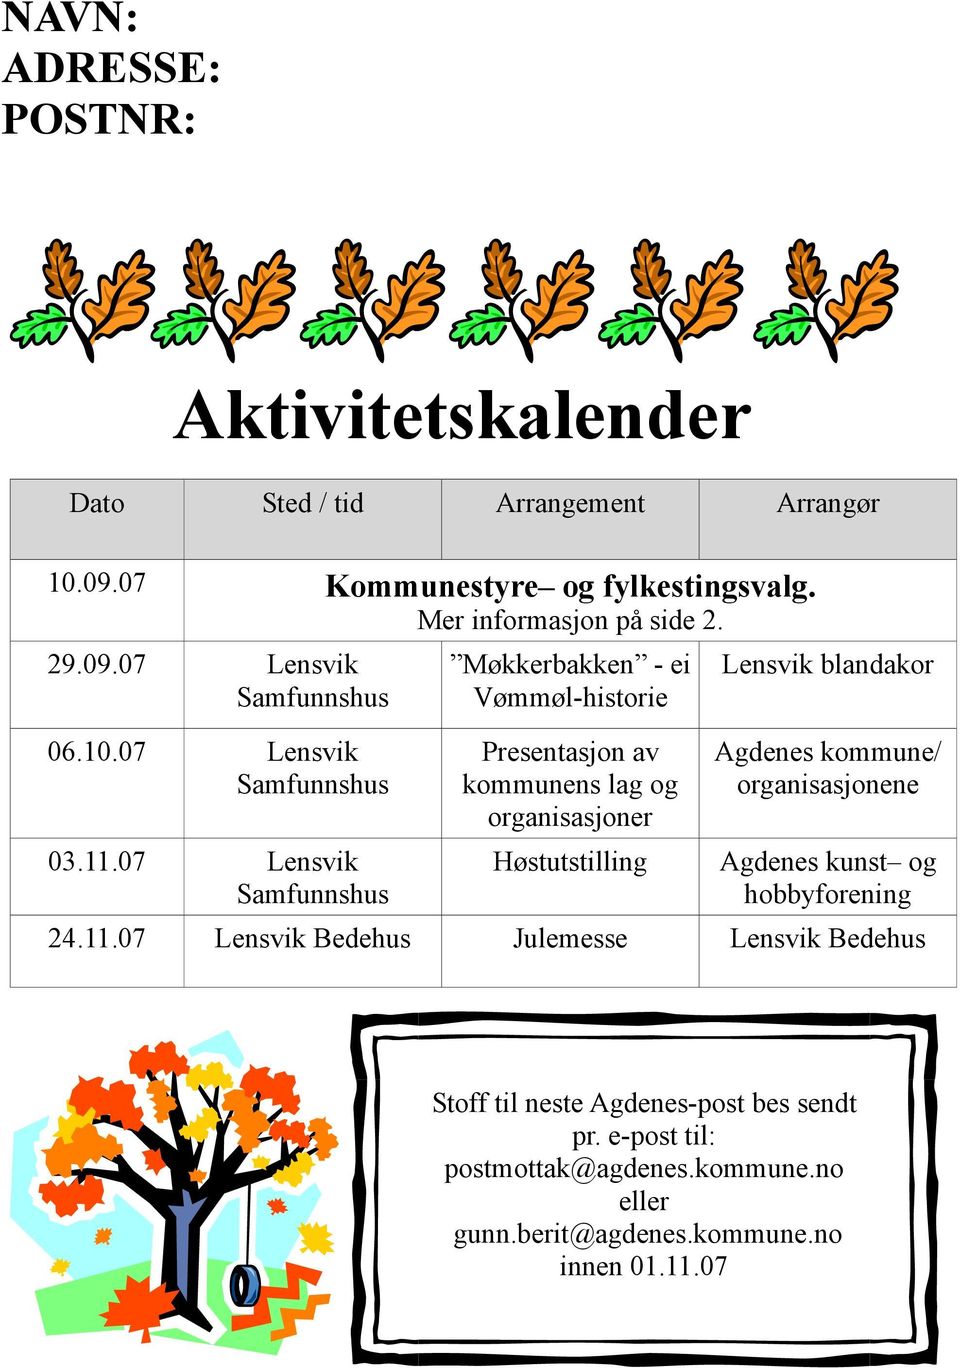 07 Lensvik Samfunnshus Møkkerbakken - ei Vømmøl-historie Presentasjon av kommunens lag og organisasjoner Høstutstilling Lensvik blandakor Agdenes